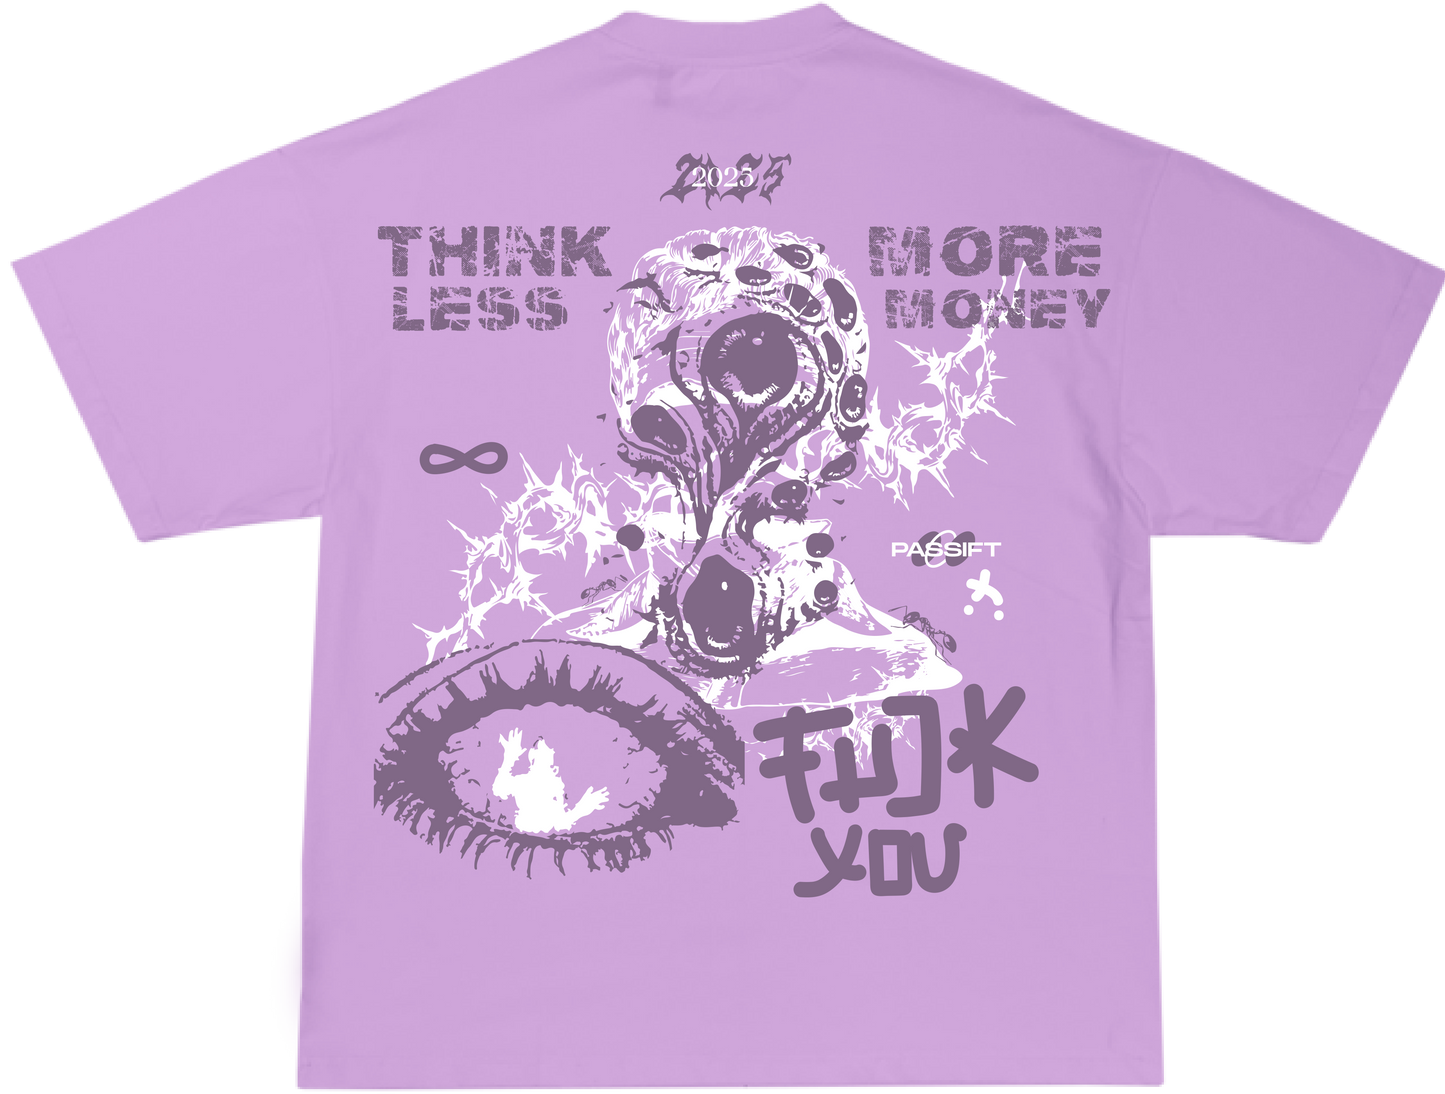 More Money Lavender T-shirt